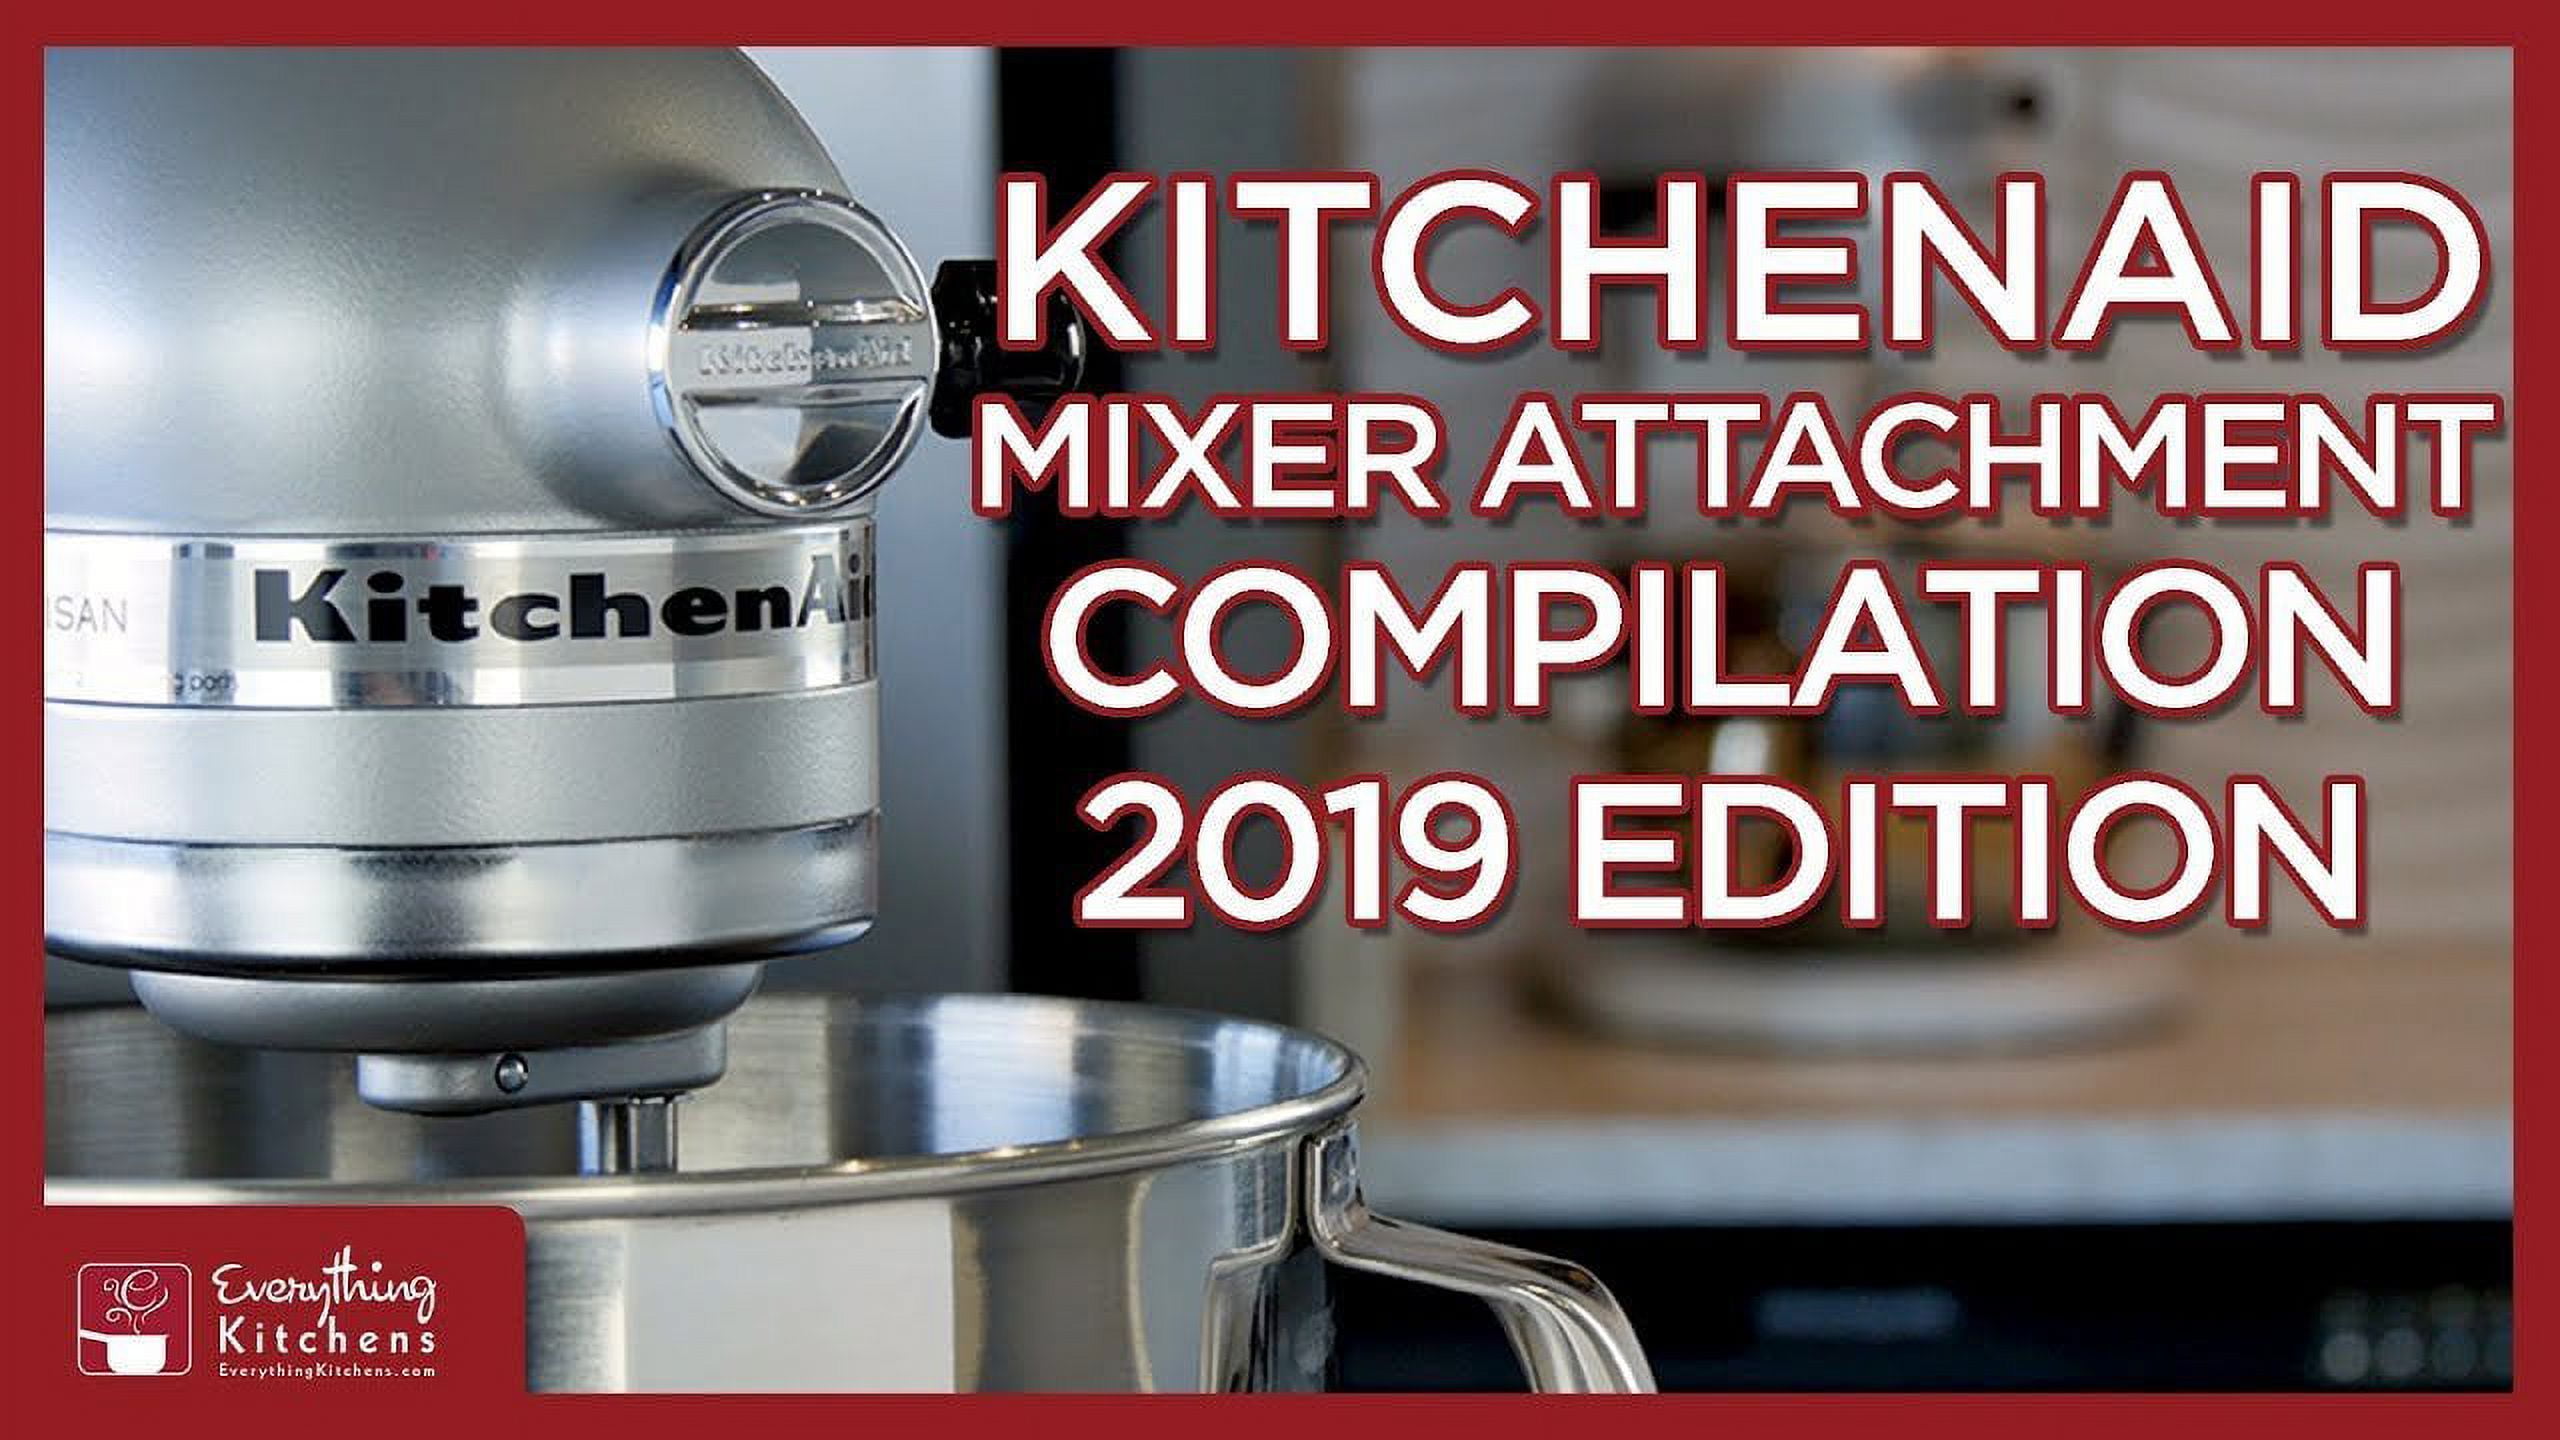 Impresa Stand Mixer Attachment Storage Organizer for KitchenAid Mixer  Attachments - Organize Your Kitchen Appliances with the Impresa Stand Mixer